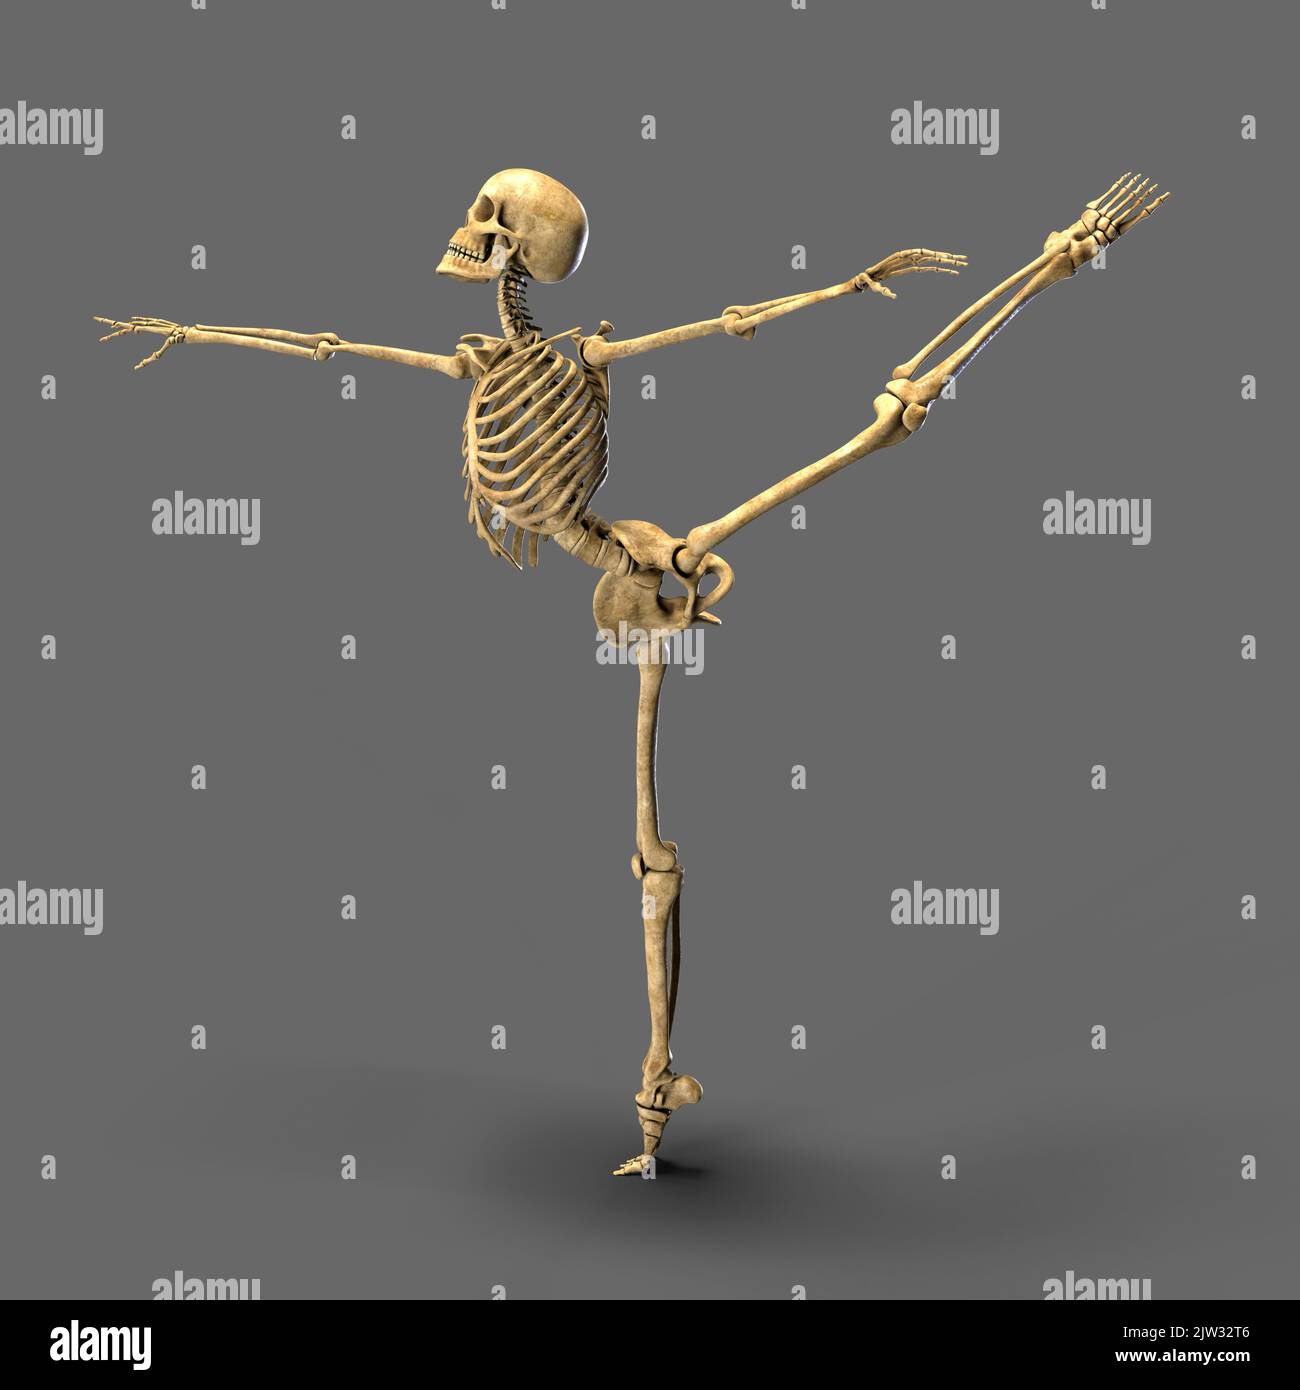 Tanzendes Skelett, Illustration. Ein menschliches Skelett in einer Ballettpose. Stockfoto